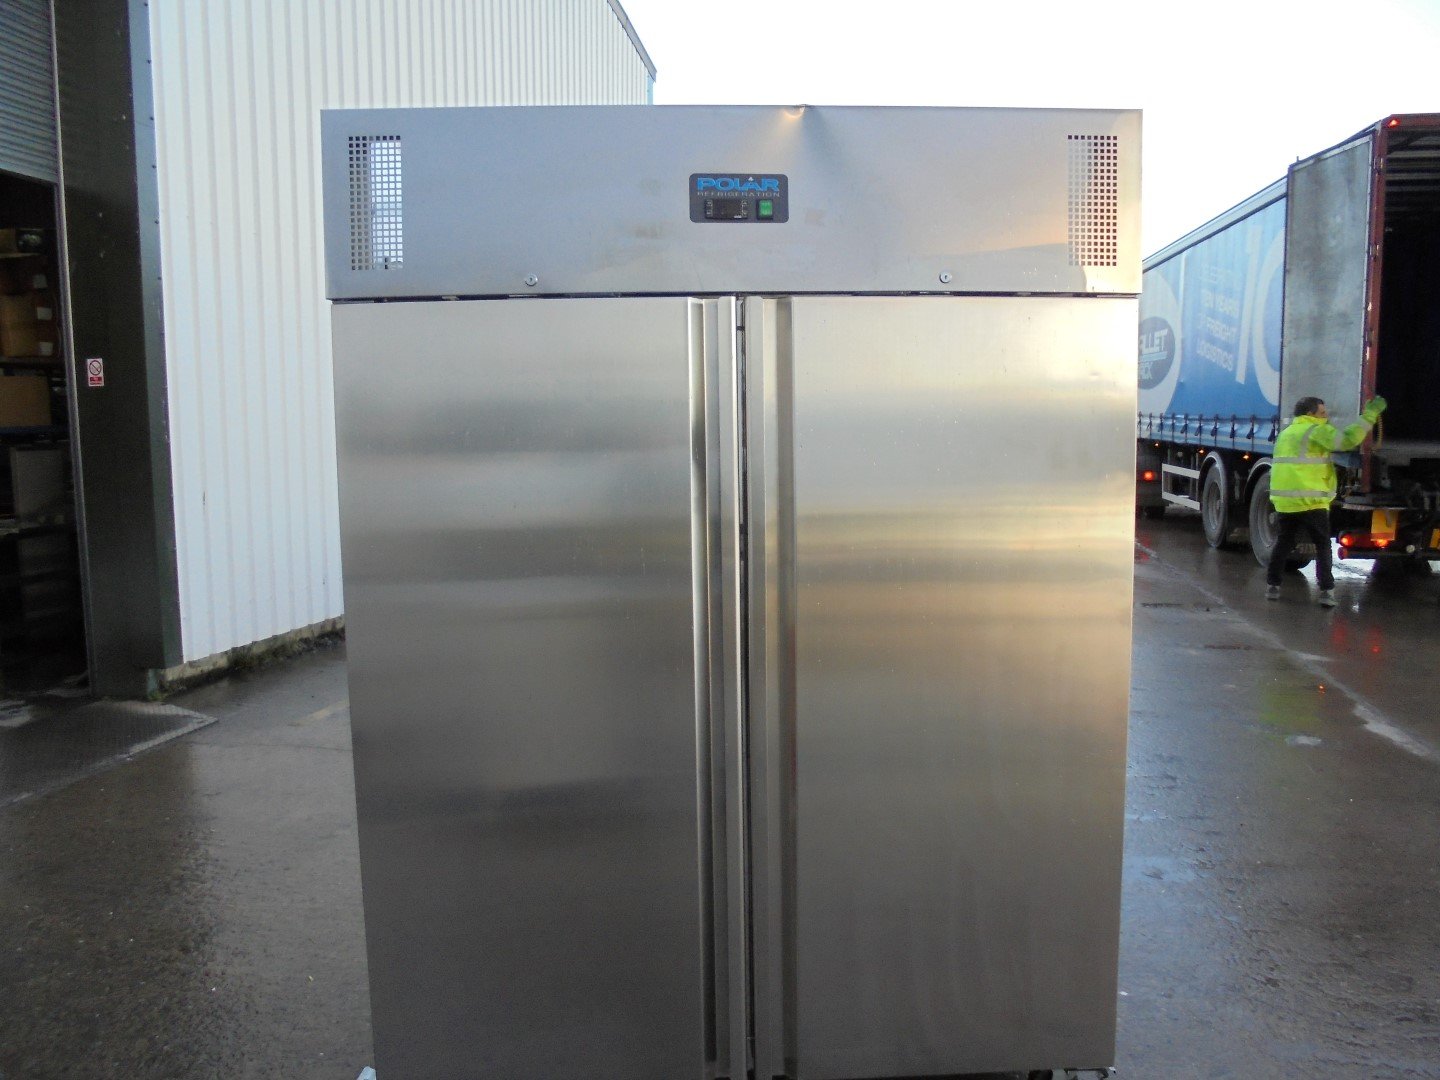 stainless steel upright freezer with reversible door